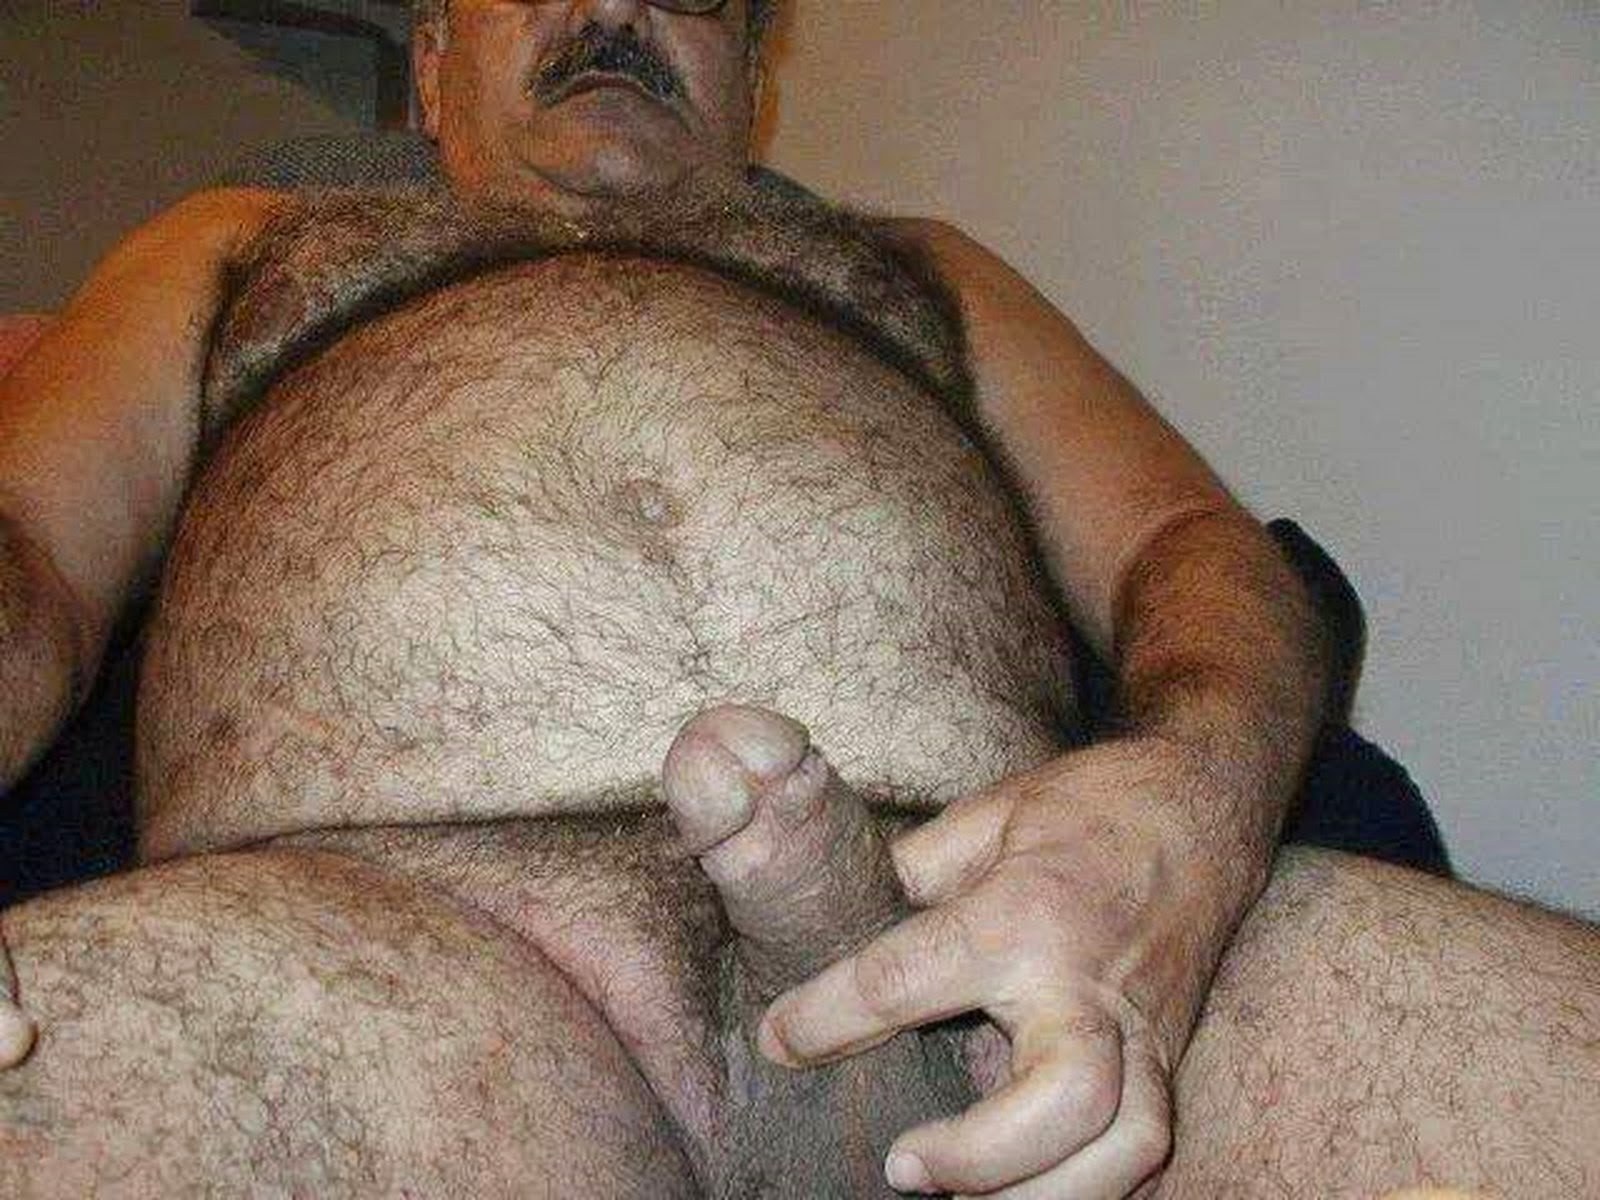 1600px x 1200px - Hairy Old Man (65 photos) - porn